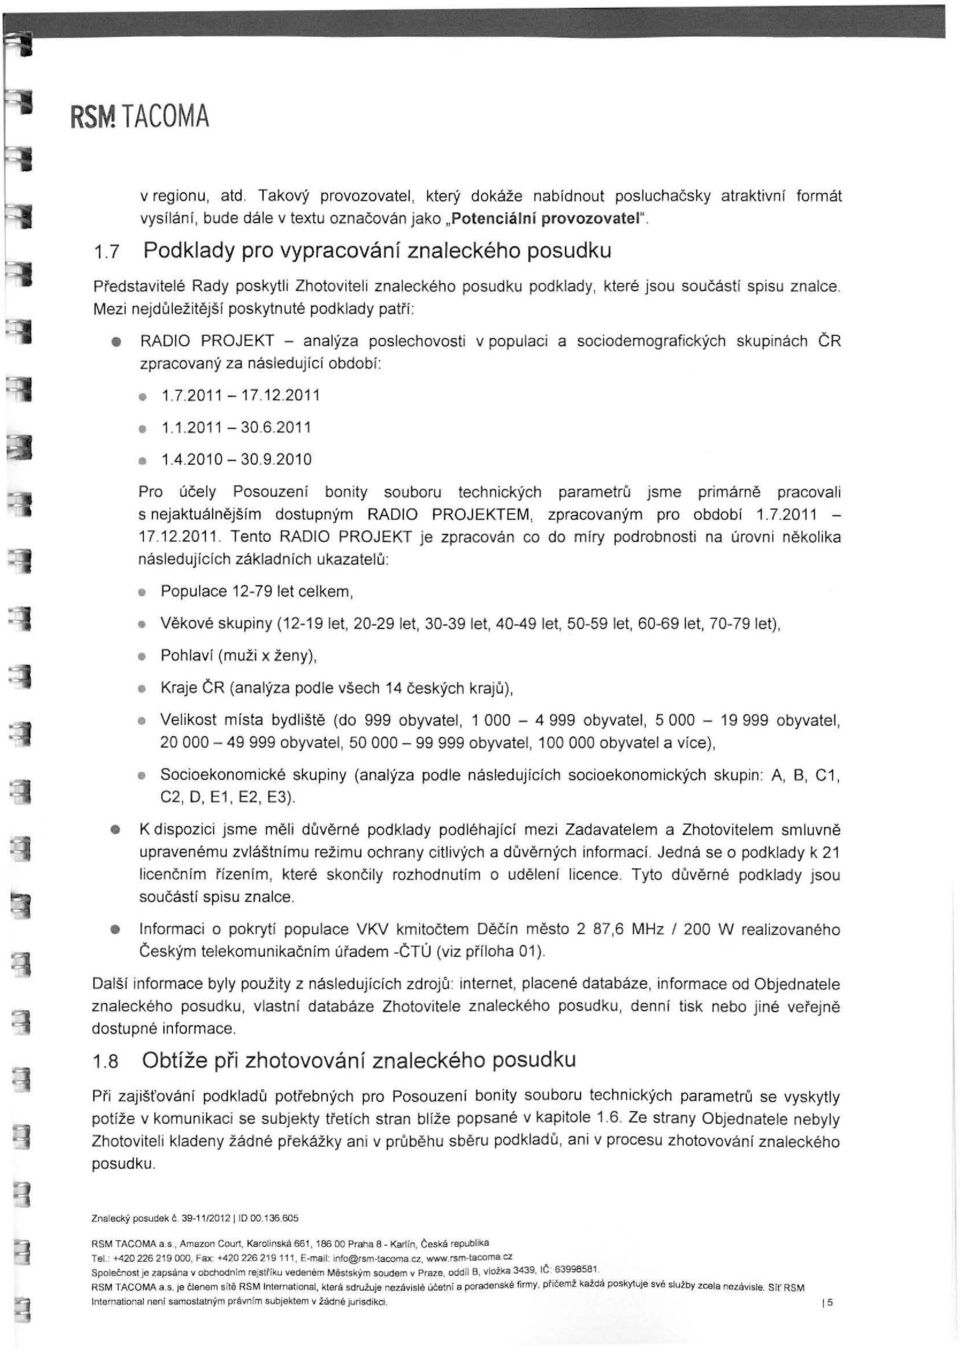 Mezi nejdůležitější poskytnuté podklady patří: RÁDIO PROJEKT - analýza poslechovosti v populaci a sociodemografických skupinách ČR zpracovaný za následující období: 1.7.2011-17.12.2011 1.1.2011-30.6.